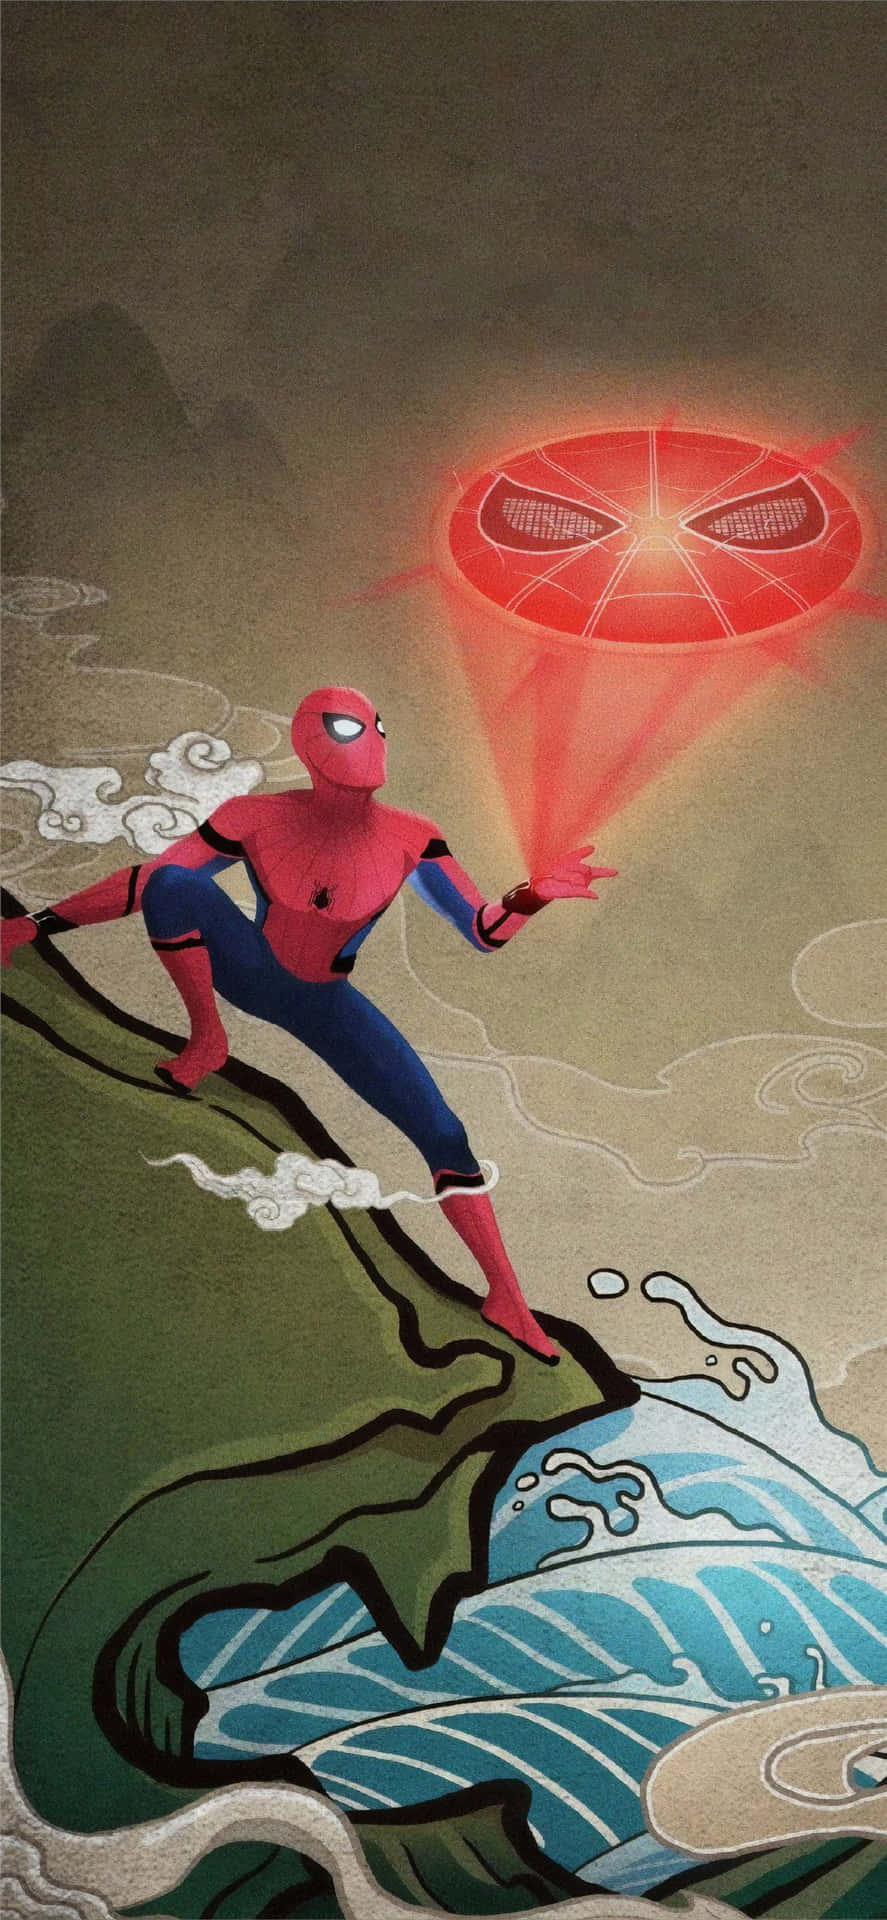 Spiderman In Das Spider-verse. Wallpaper